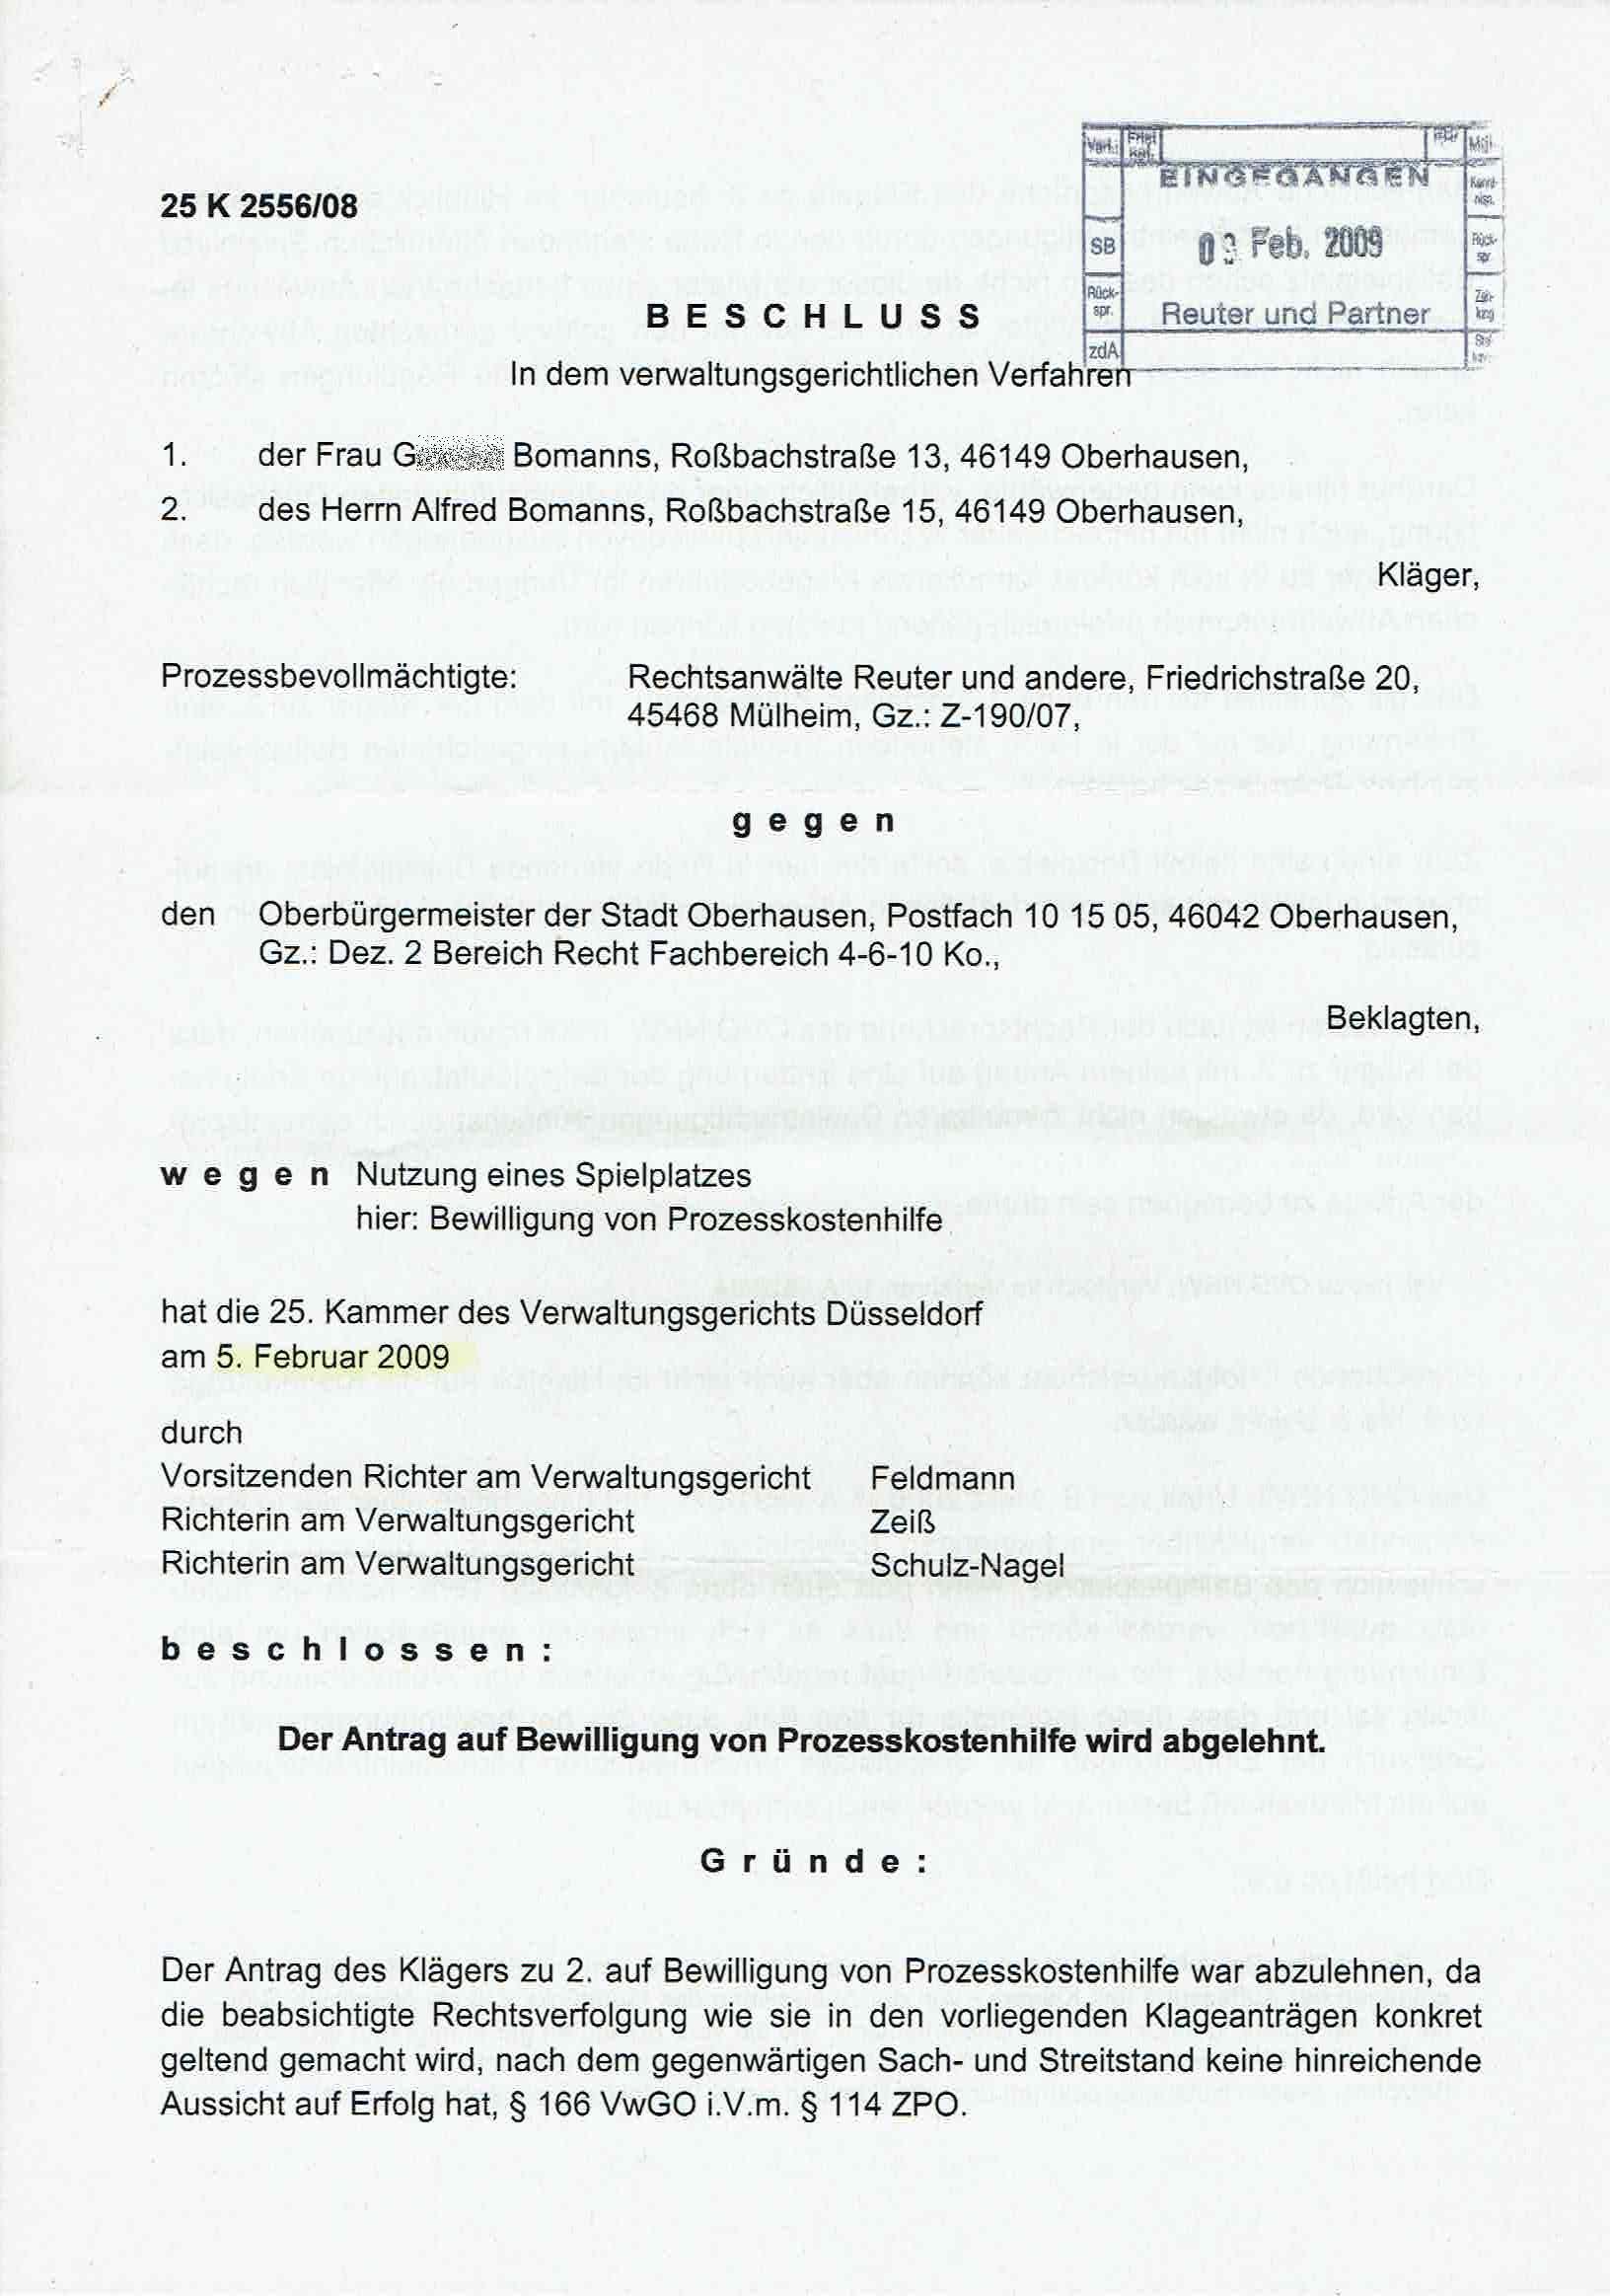 Bescheid der Richter Ulrich Feldmann, Gudrun Zeiß und Rita Schulz-Nagel, Verwaltungsgericht Düsseldorf, über die Ablehnung von Prozeßkostenhilfe vom 05.02.2009, S. 1